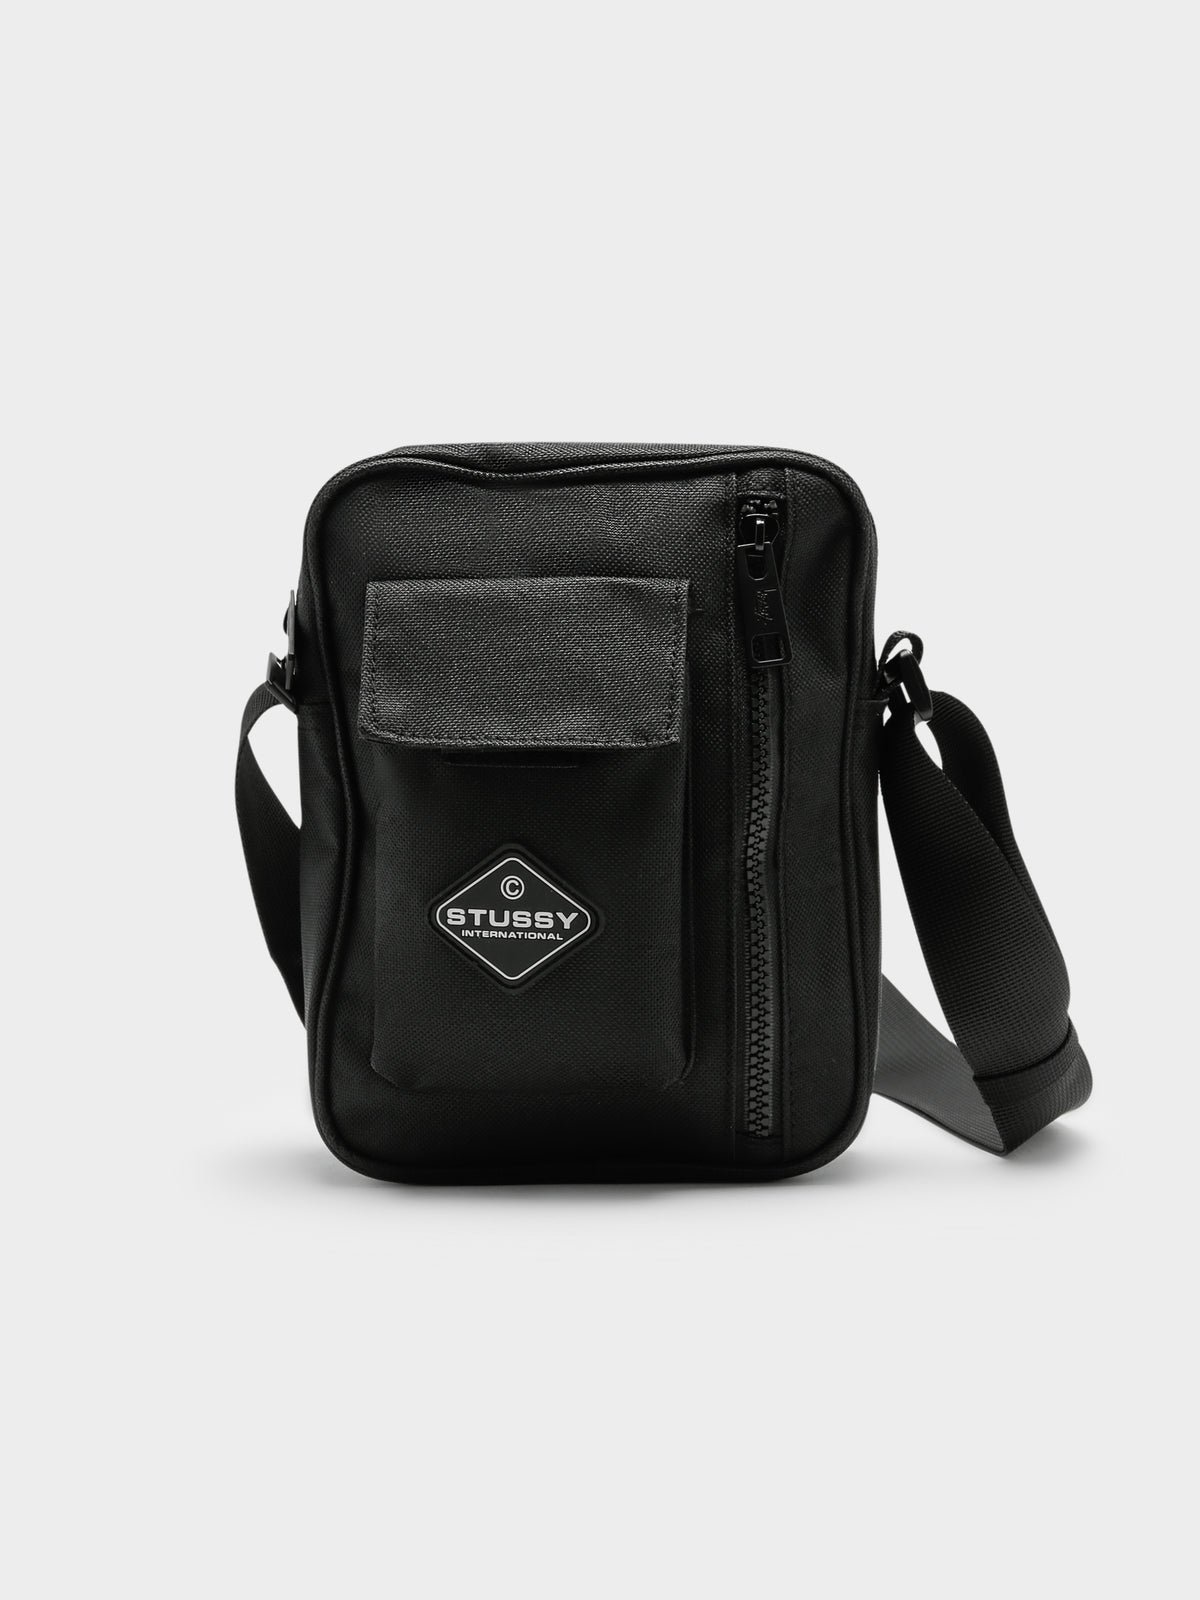 Workgear Pocket Bag in Black